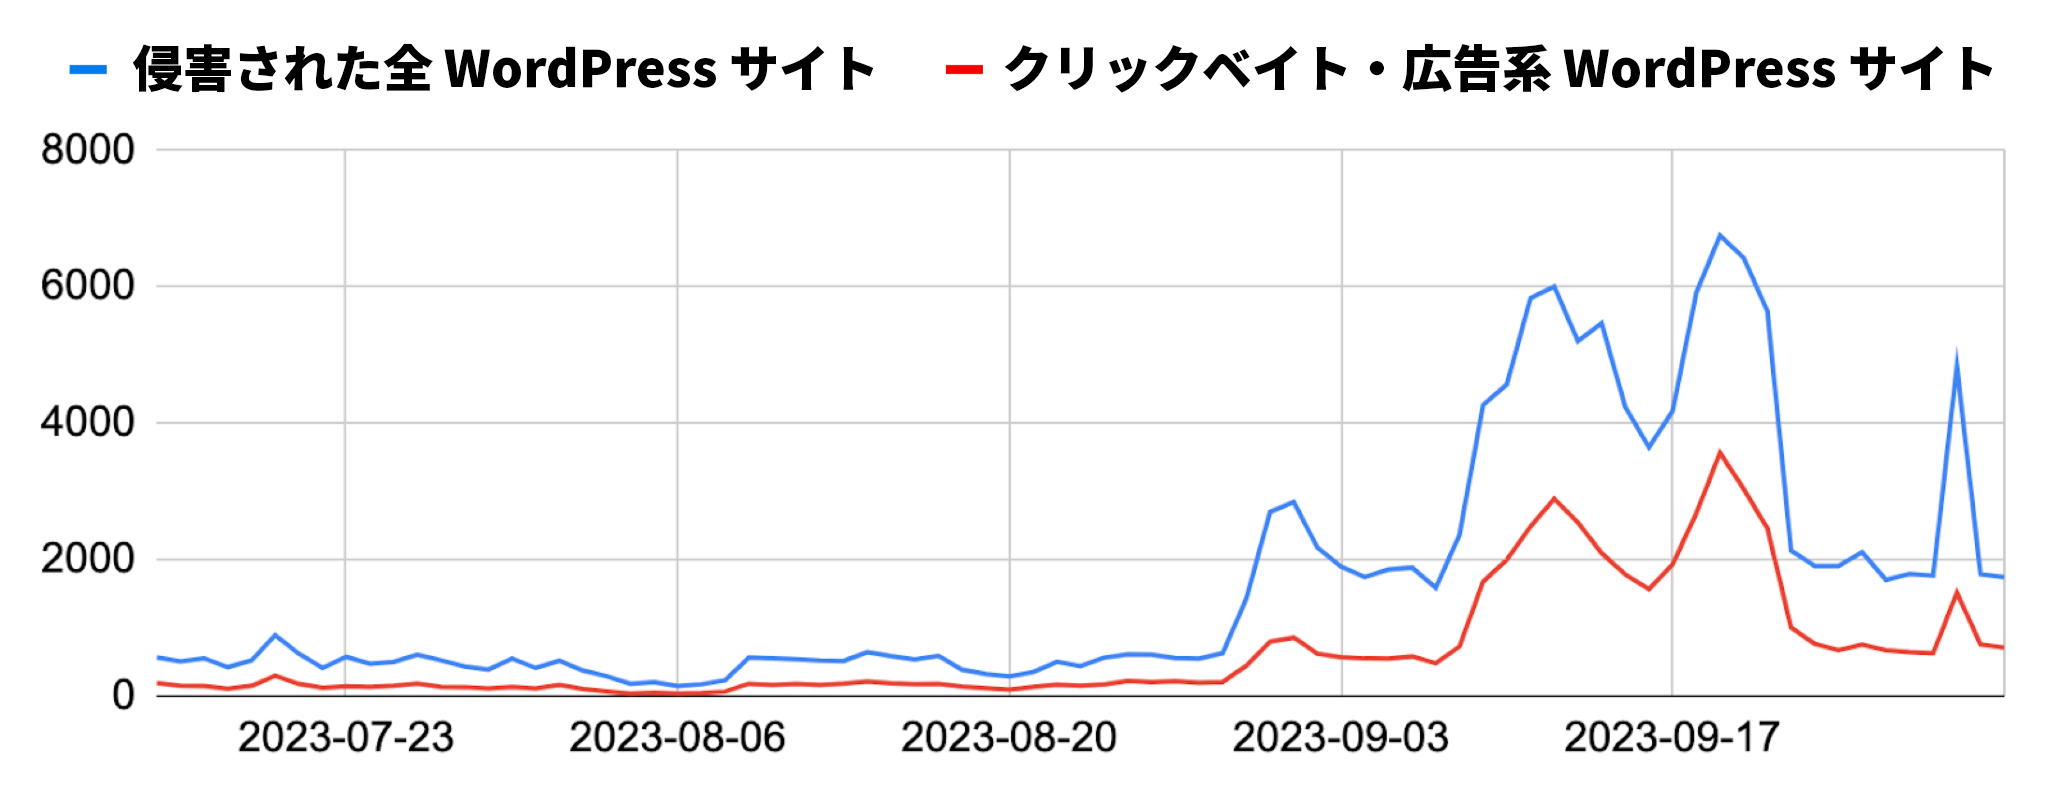 画像 6 は、侵害されたすべての WordPress サイト (青線) と、広告/クリックベイト サイト (赤線) を比較したグラフです。グラフは 2023 年 8 月下旬に始まり、2023 年 9 月まで続いています。9 月から活動が活発になっています。 